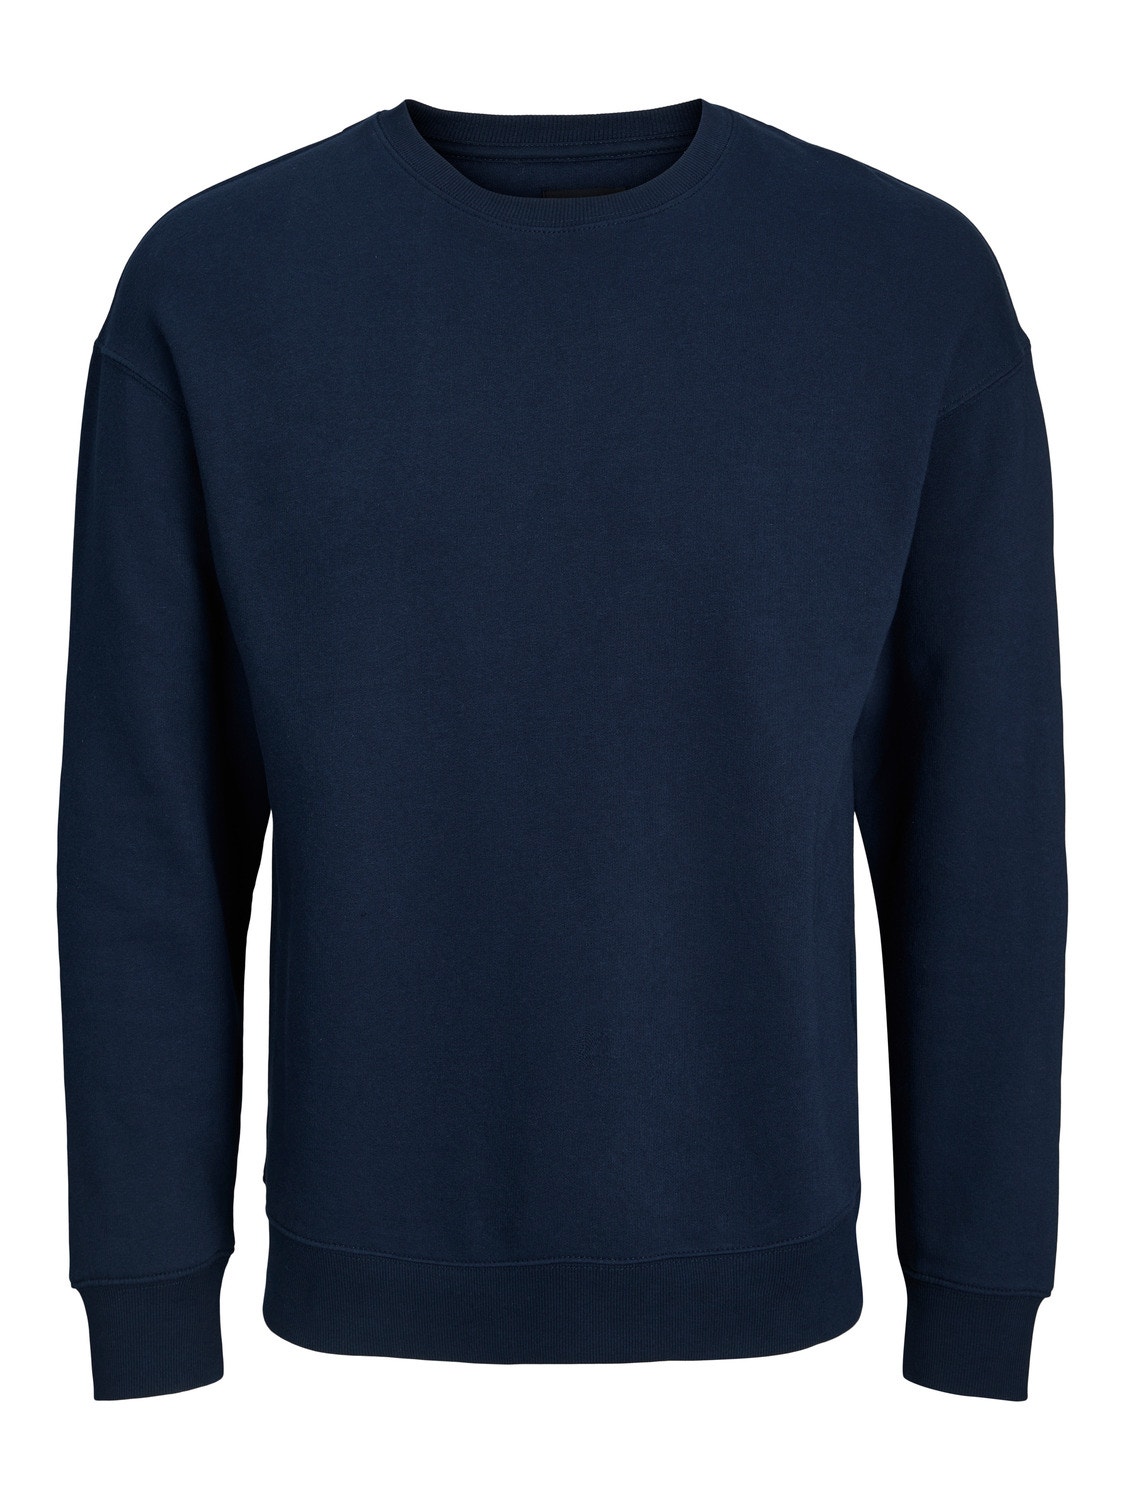 Jack & Jones Plus Size Ensfarvet Sweatshirt med rund hals -Navy Blazer - 12250594